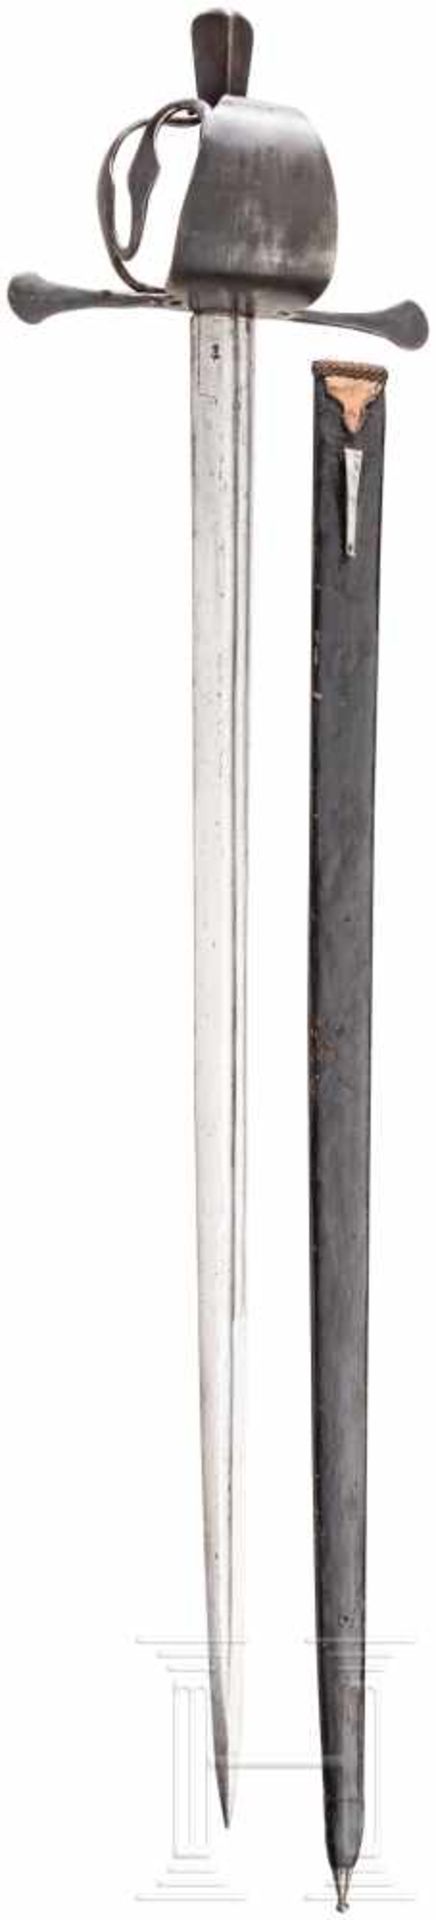 Militärisches Korbschwert mit Scheide, steirisch, Ende 16. Jhdt.Beidseitig doppelt gekehlte,